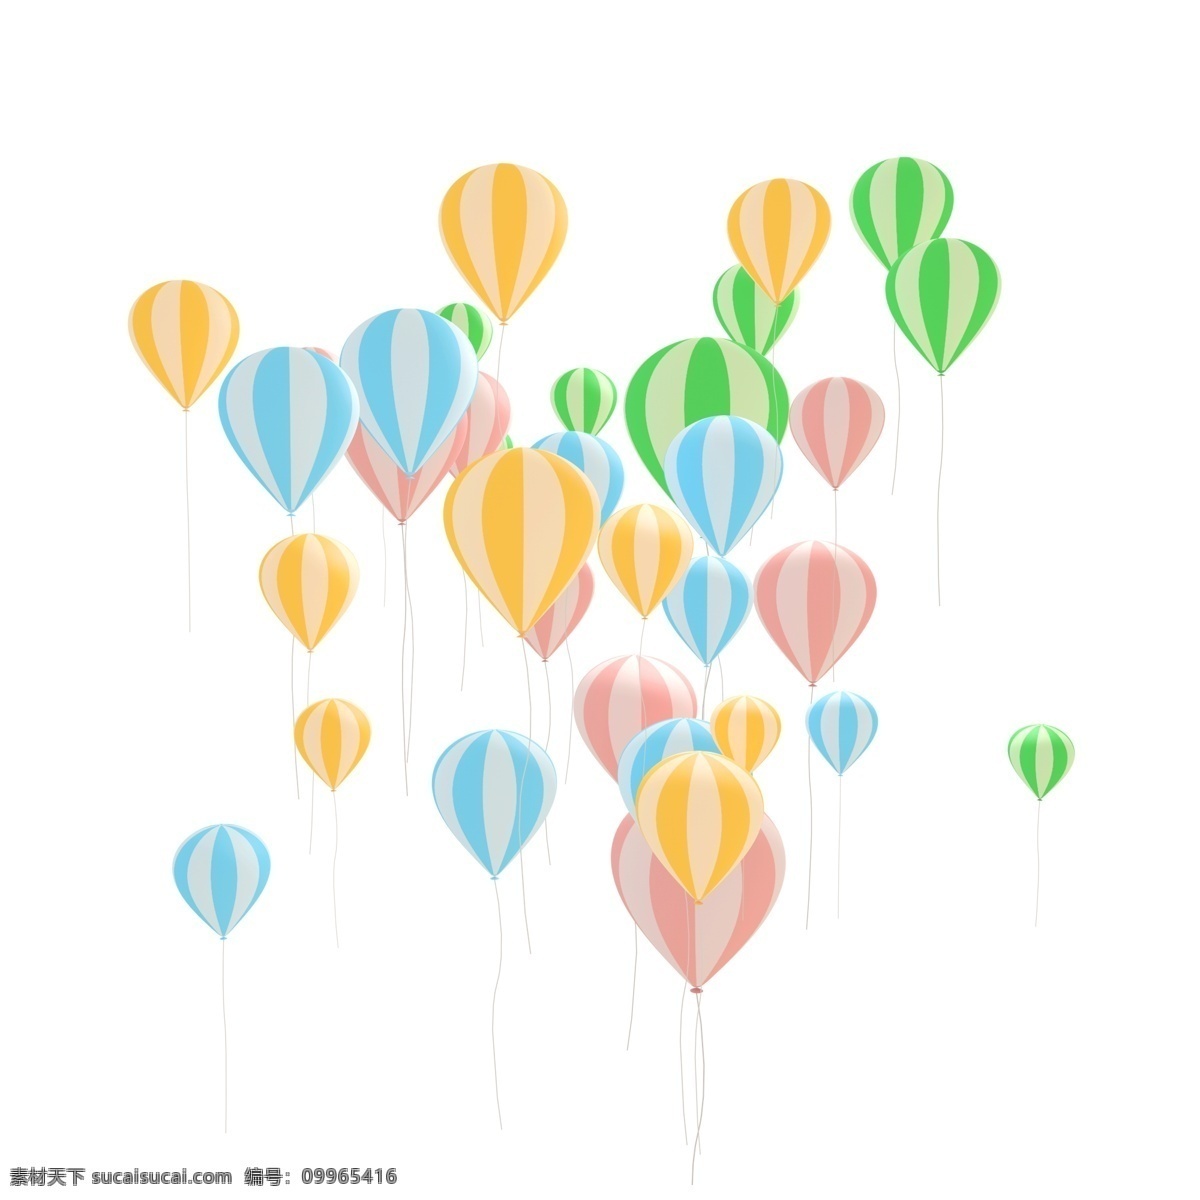 彩色 c4d 立体 气球 漂浮 蓝色 绿色 黄色 粉色